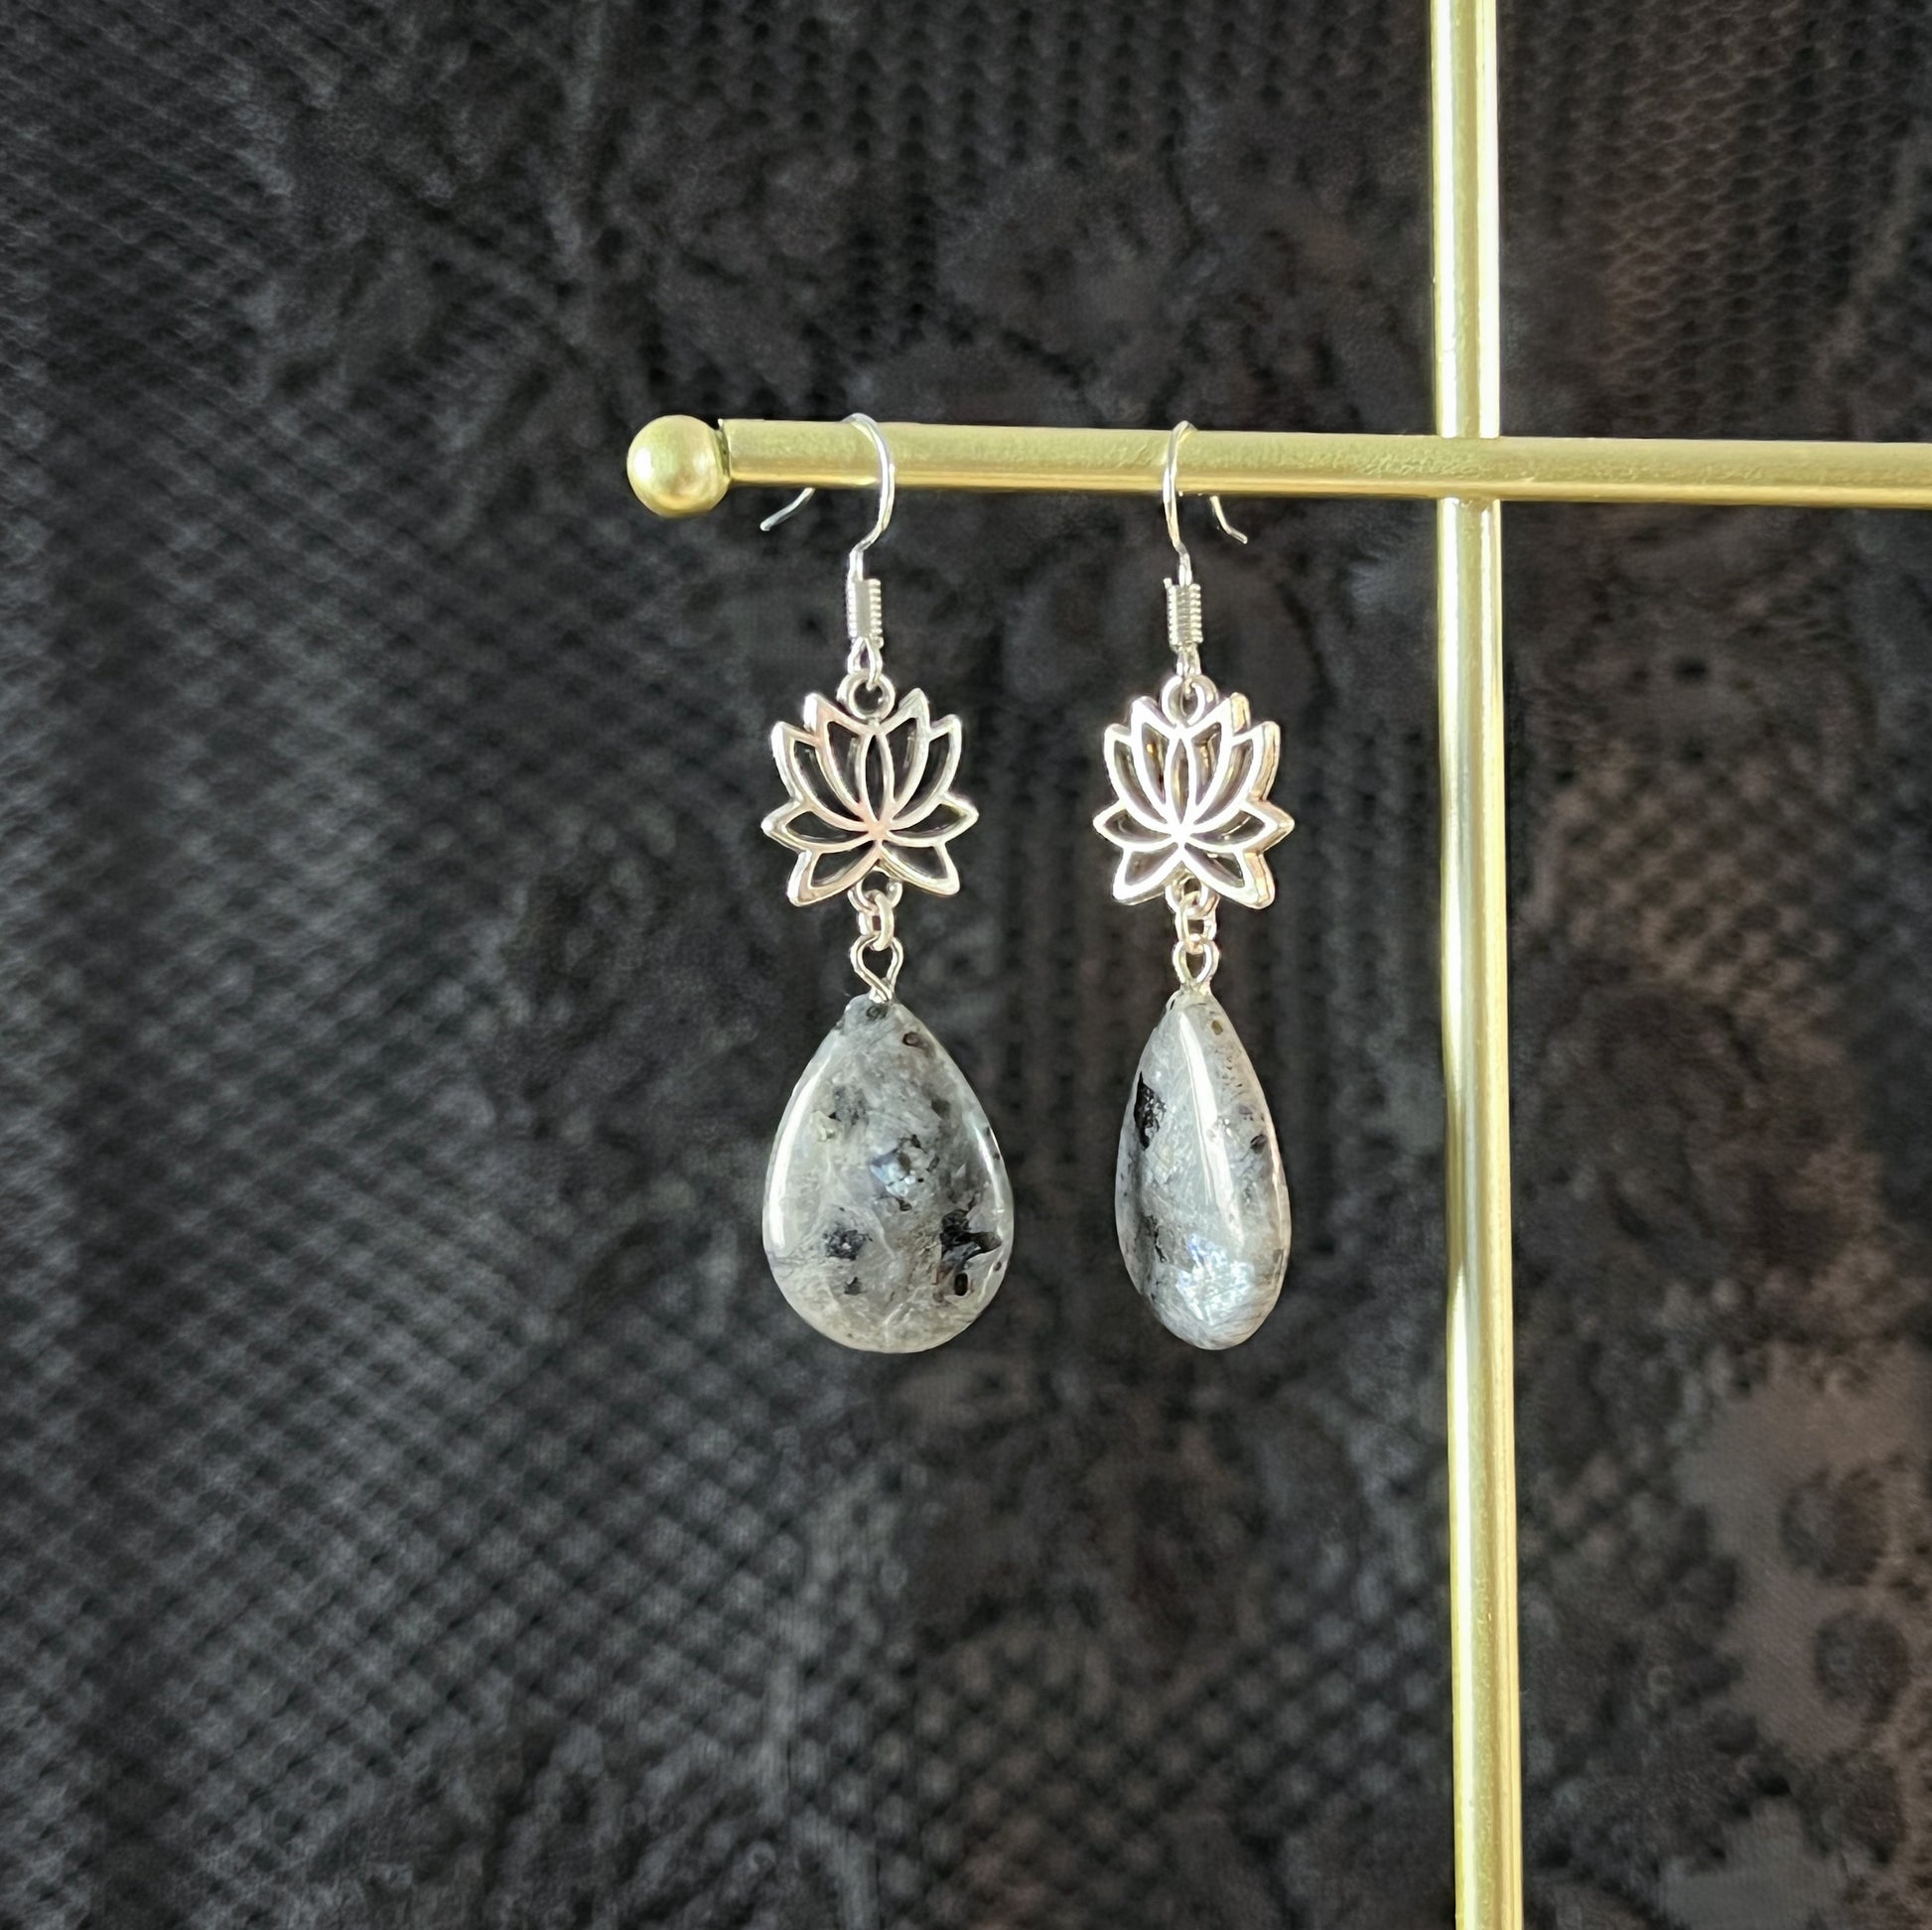 Lotus and larvikite earrings spiritual jewelry teardrop earrings crystal lotus earrings